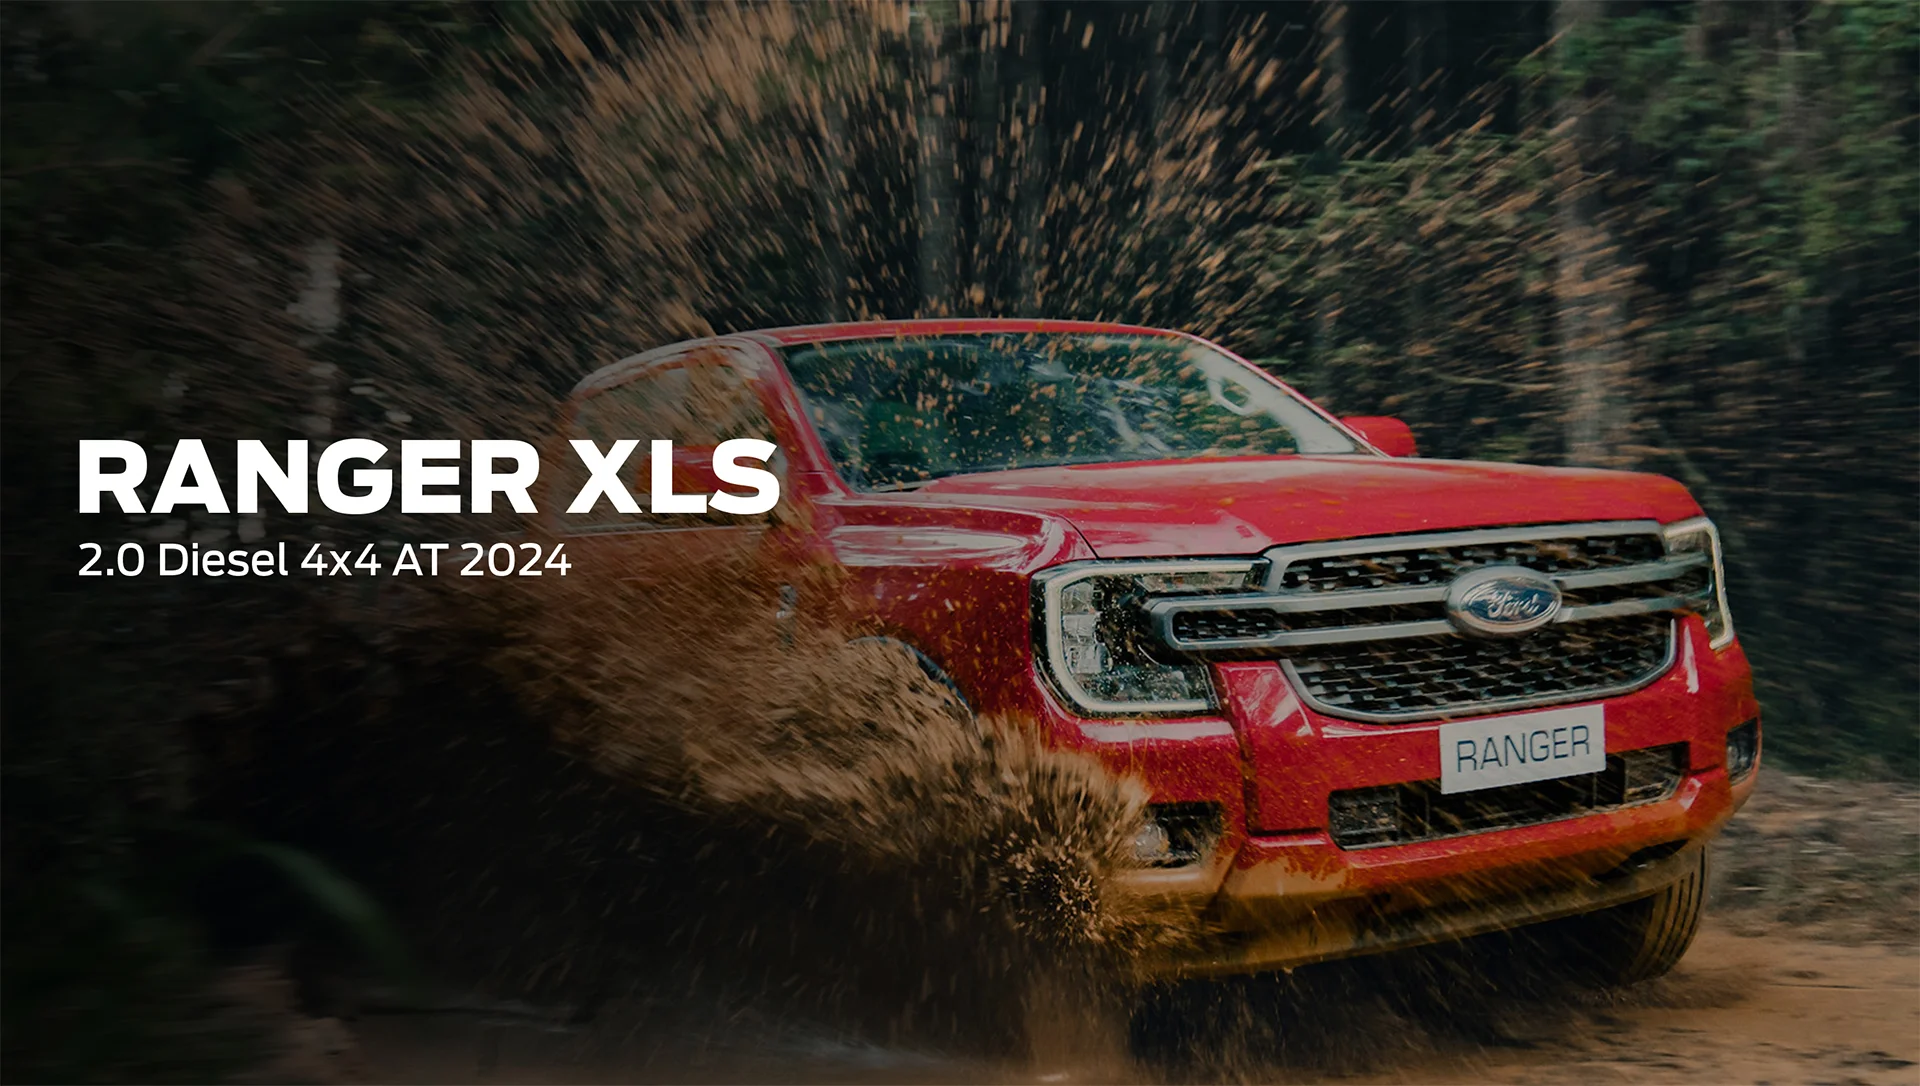 Ranger XLS 2.0 Diesel 4x4 AT 2024